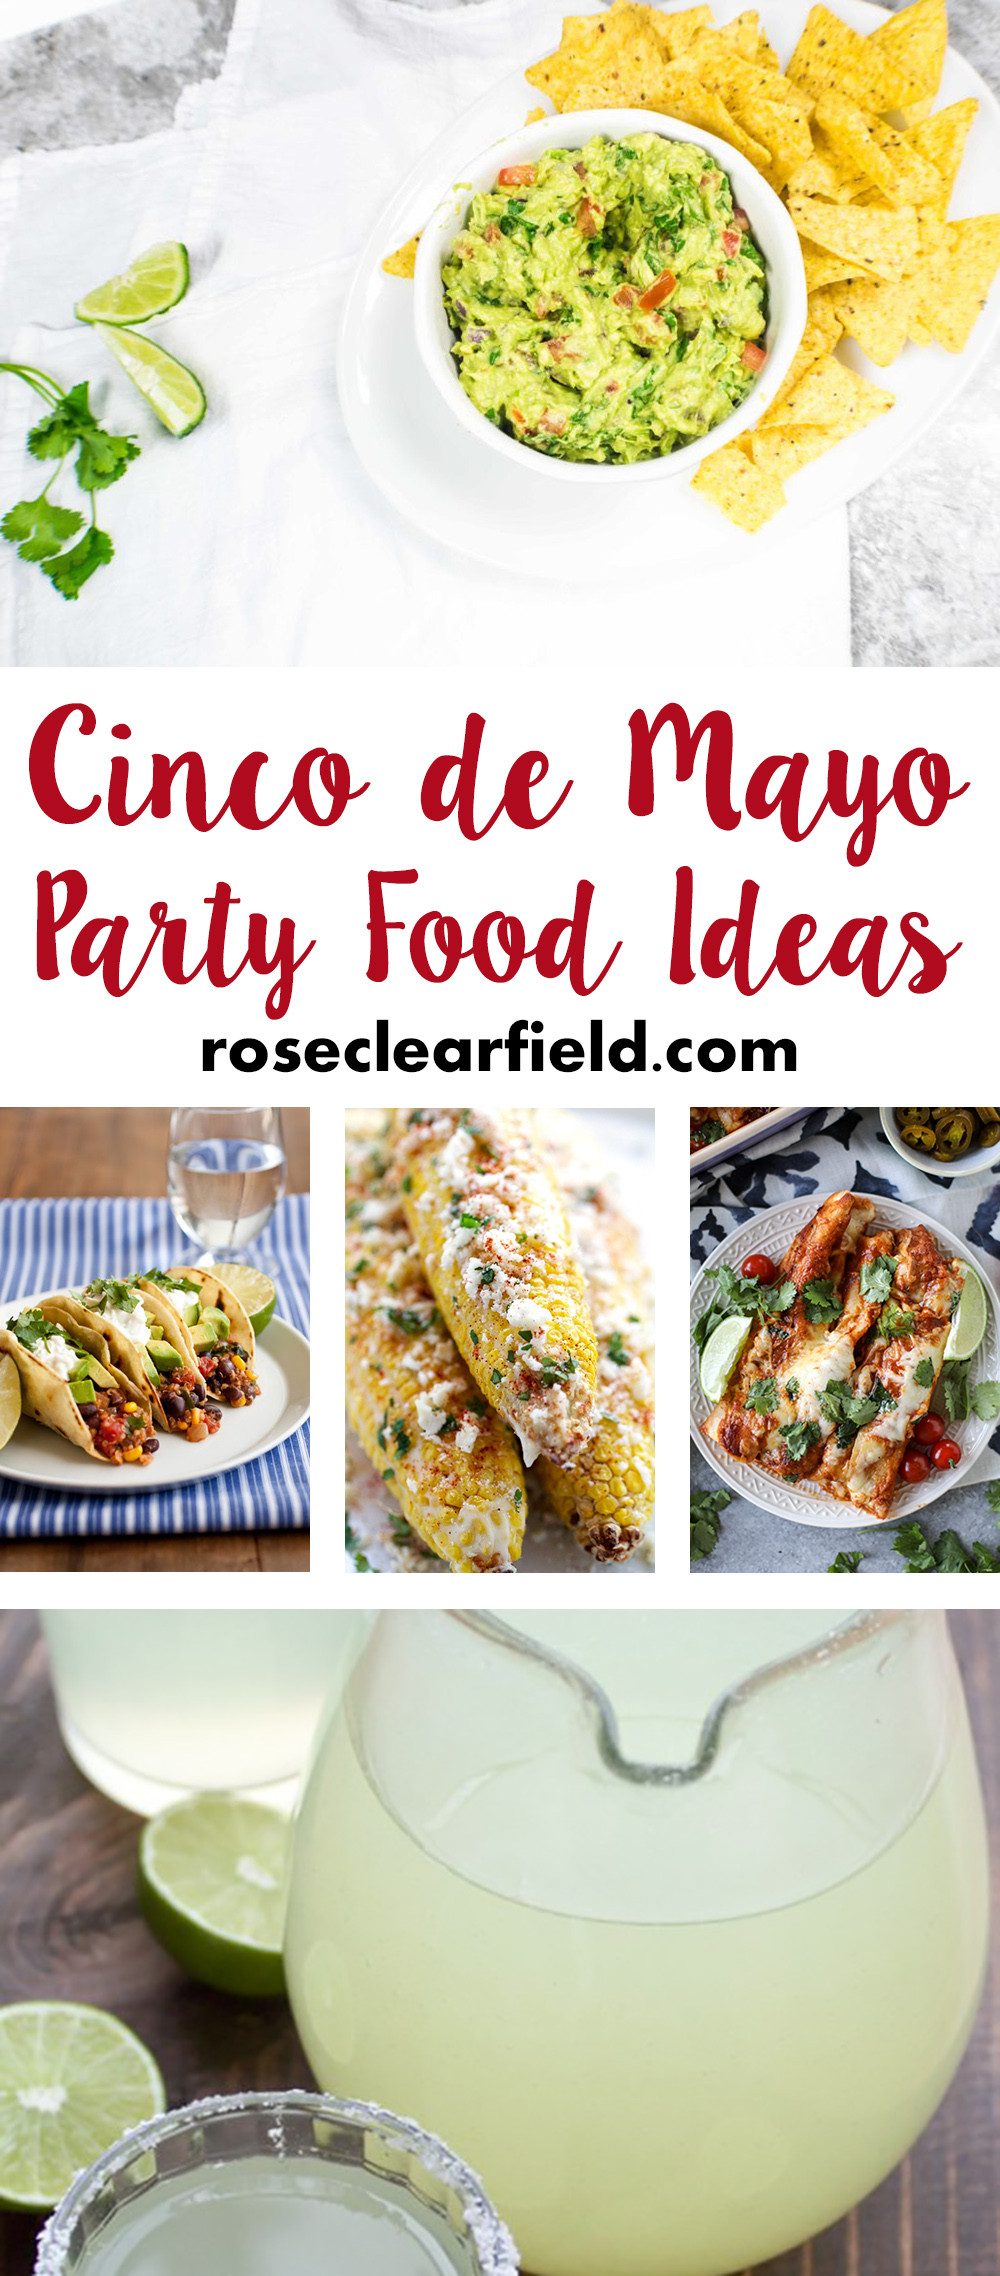 Cinco De Mayo Menu Ideas
 Cinco de Mayo Party Food Ideas • Rose Clearfield